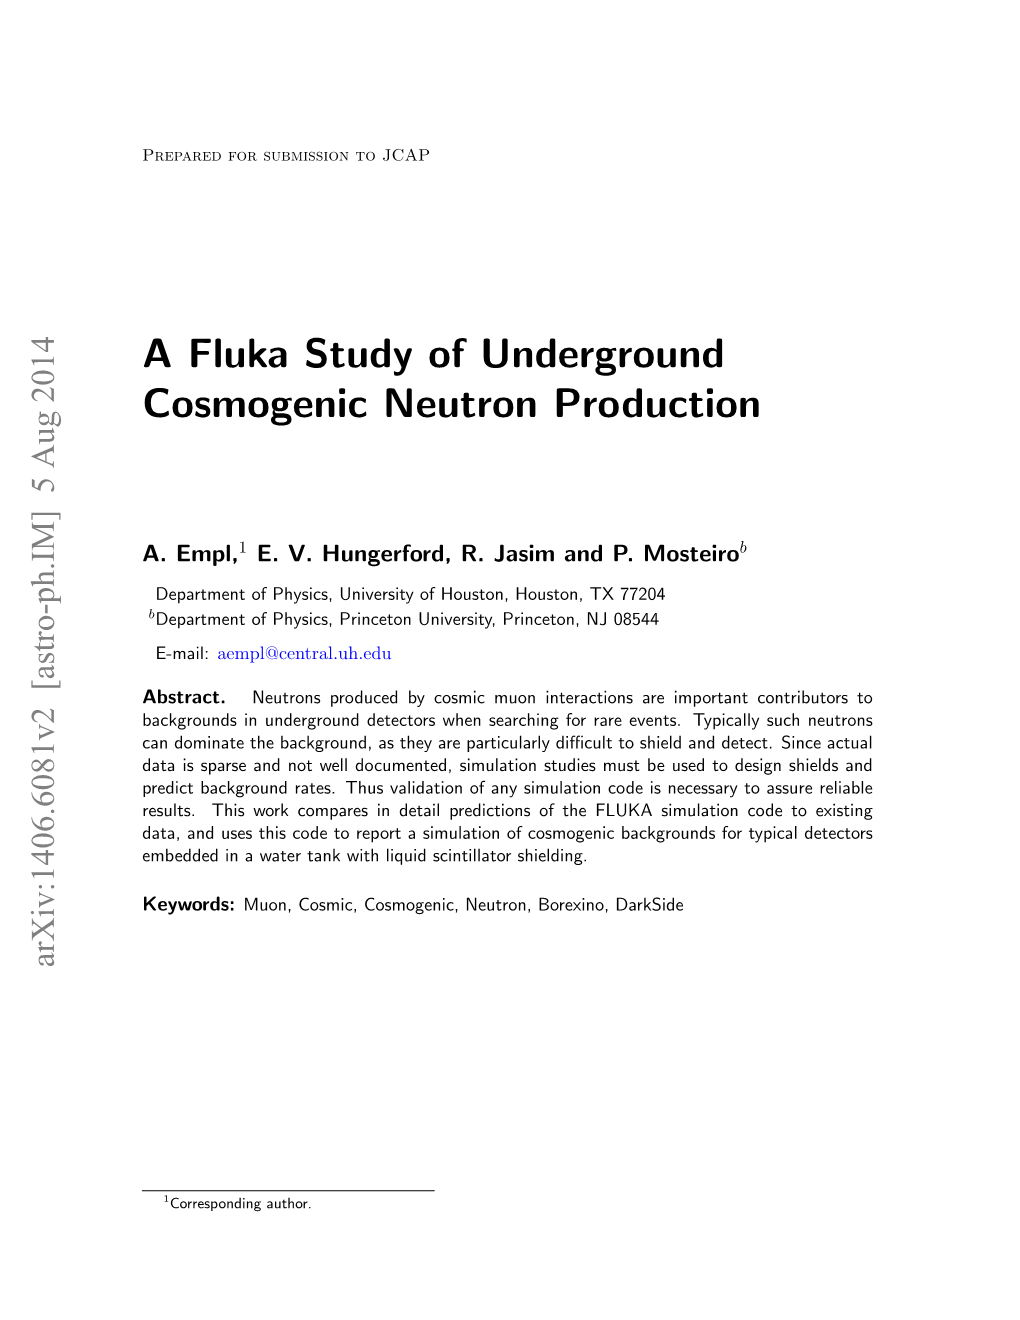 A Fluka Study of Underground Cosmogenic Neutron Production